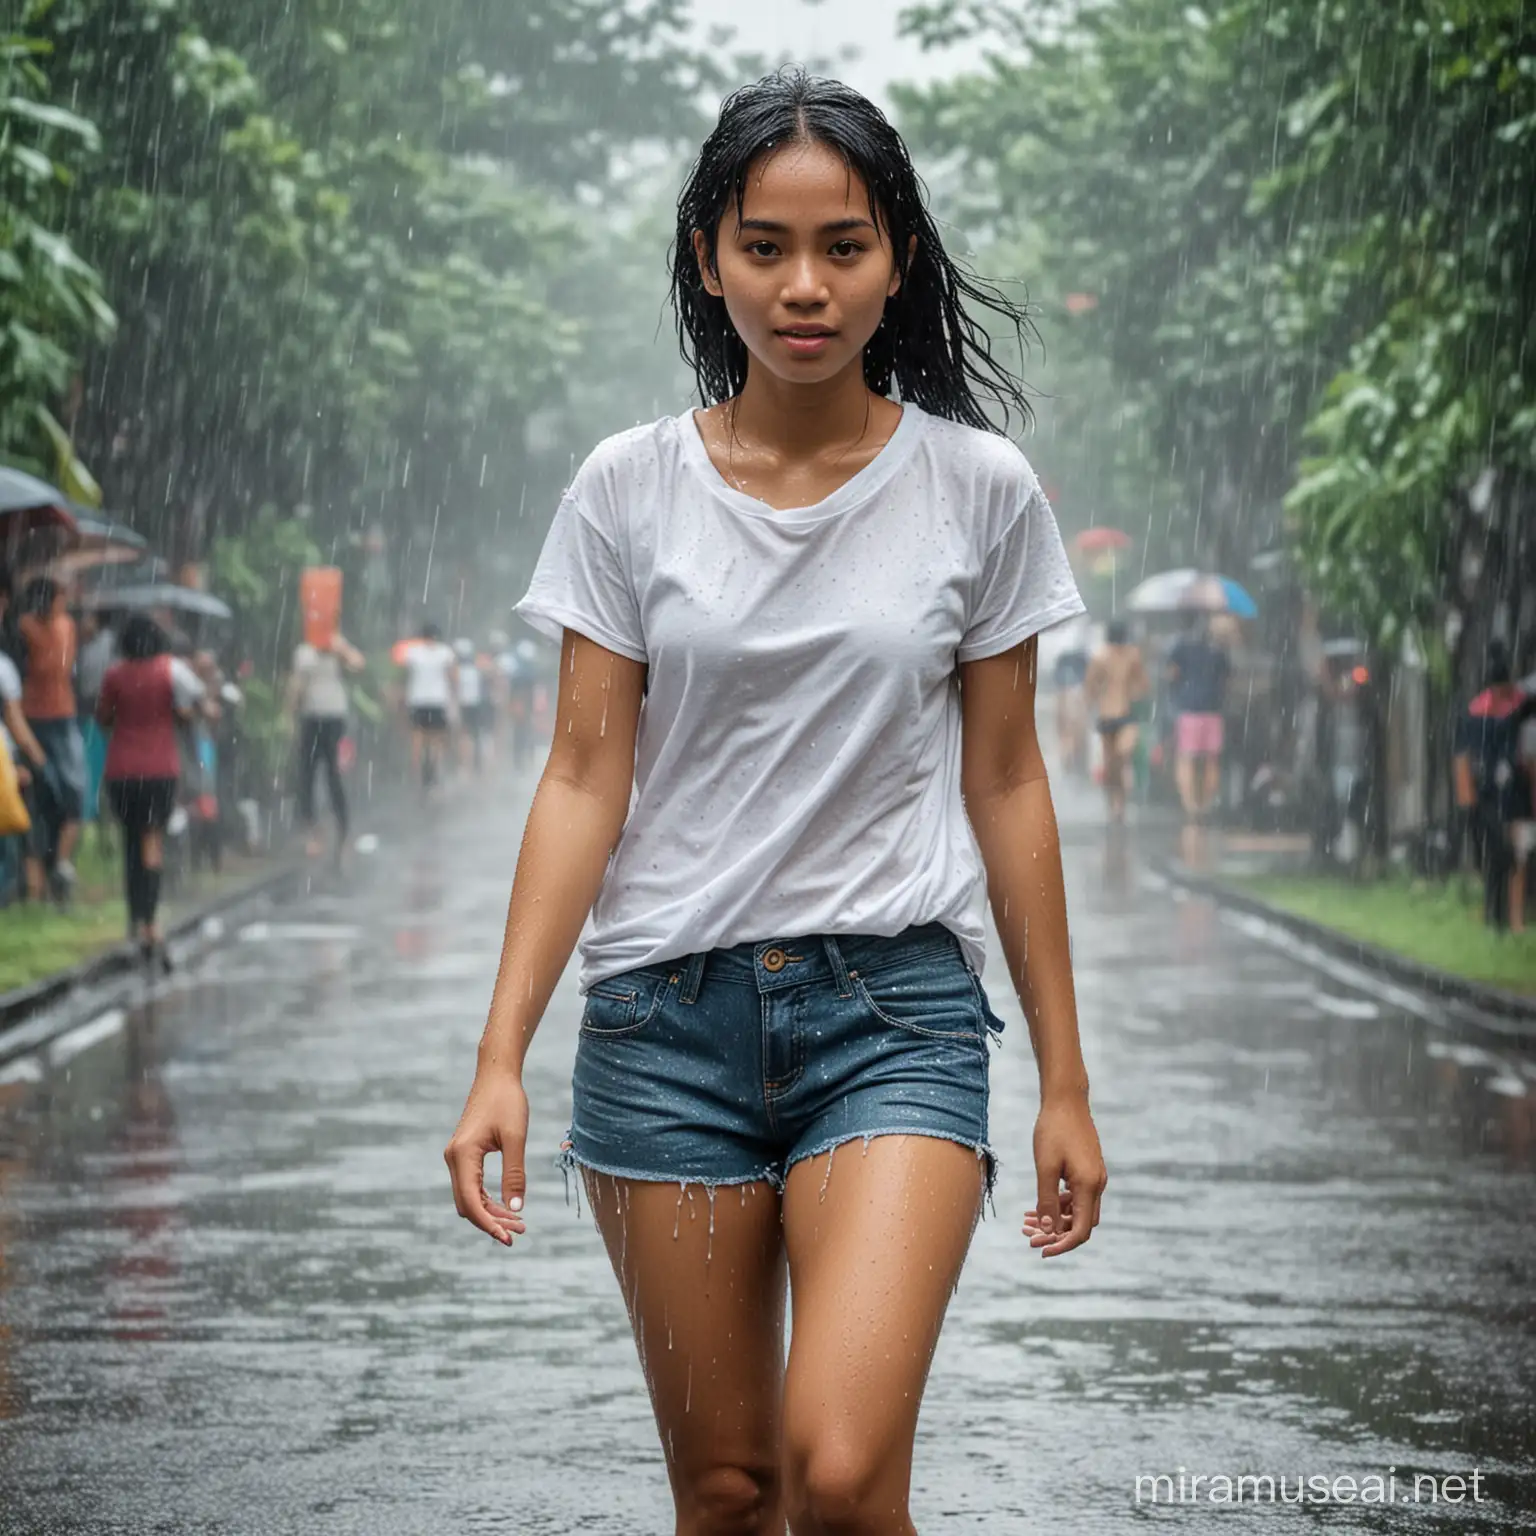 Wanita muda indonesia menggunakan kaos putih celana pendek di tengah hujan dan seluruh tubuh basah